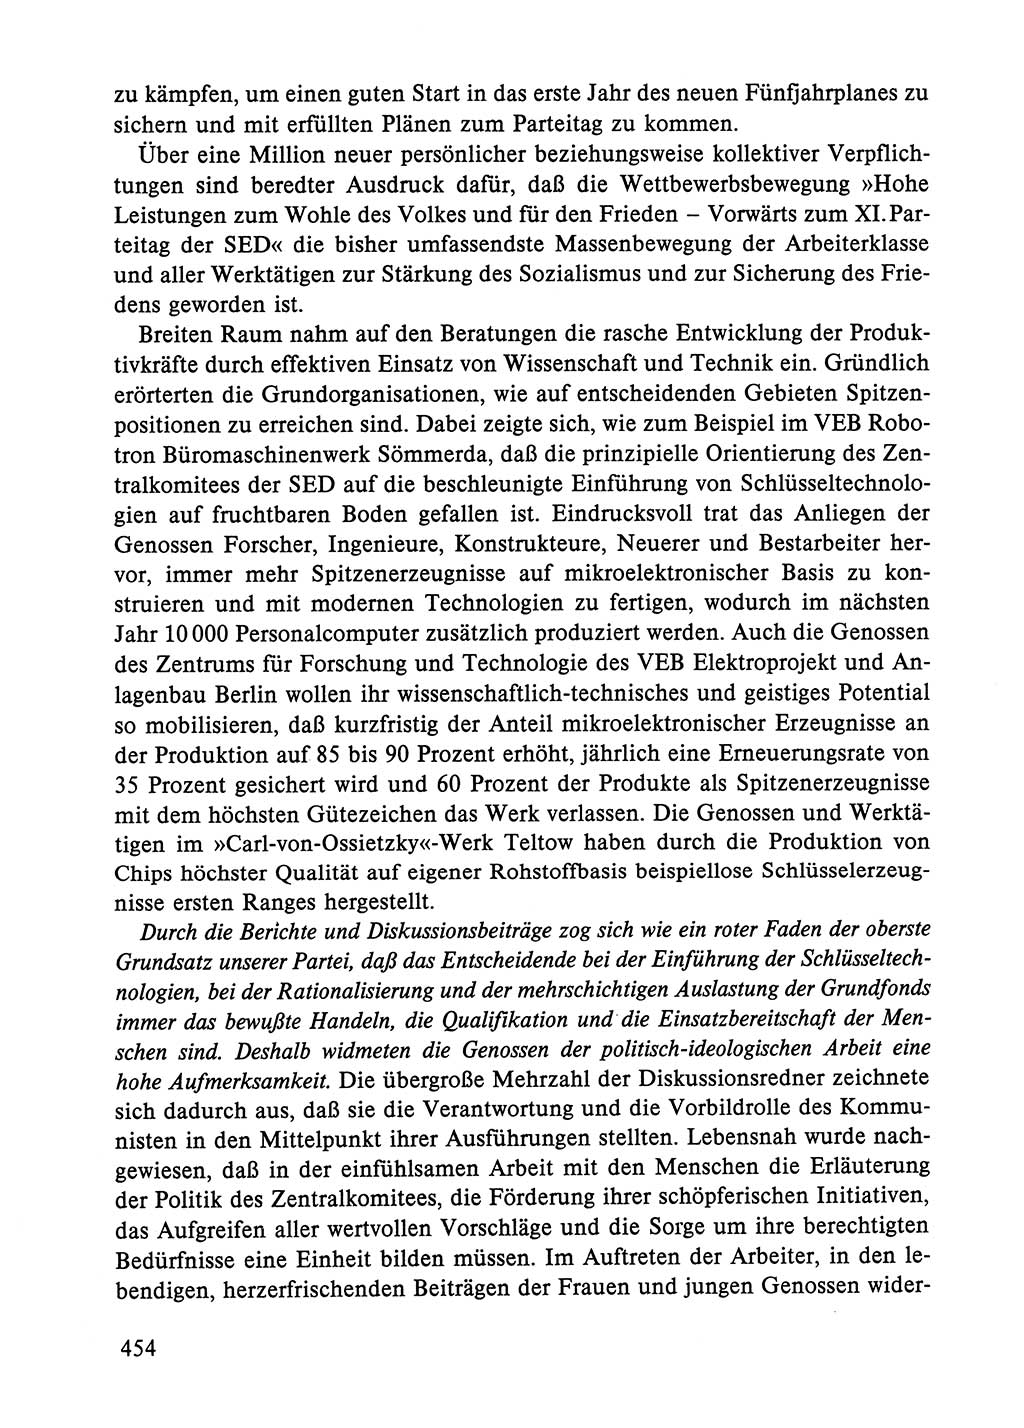 Dokumente der Sozialistischen Einheitspartei Deutschlands (SED) [Deutsche Demokratische Republik (DDR)] 1984-1985, Seite 454 (Dok. SED DDR 1984-1985, S. 454)